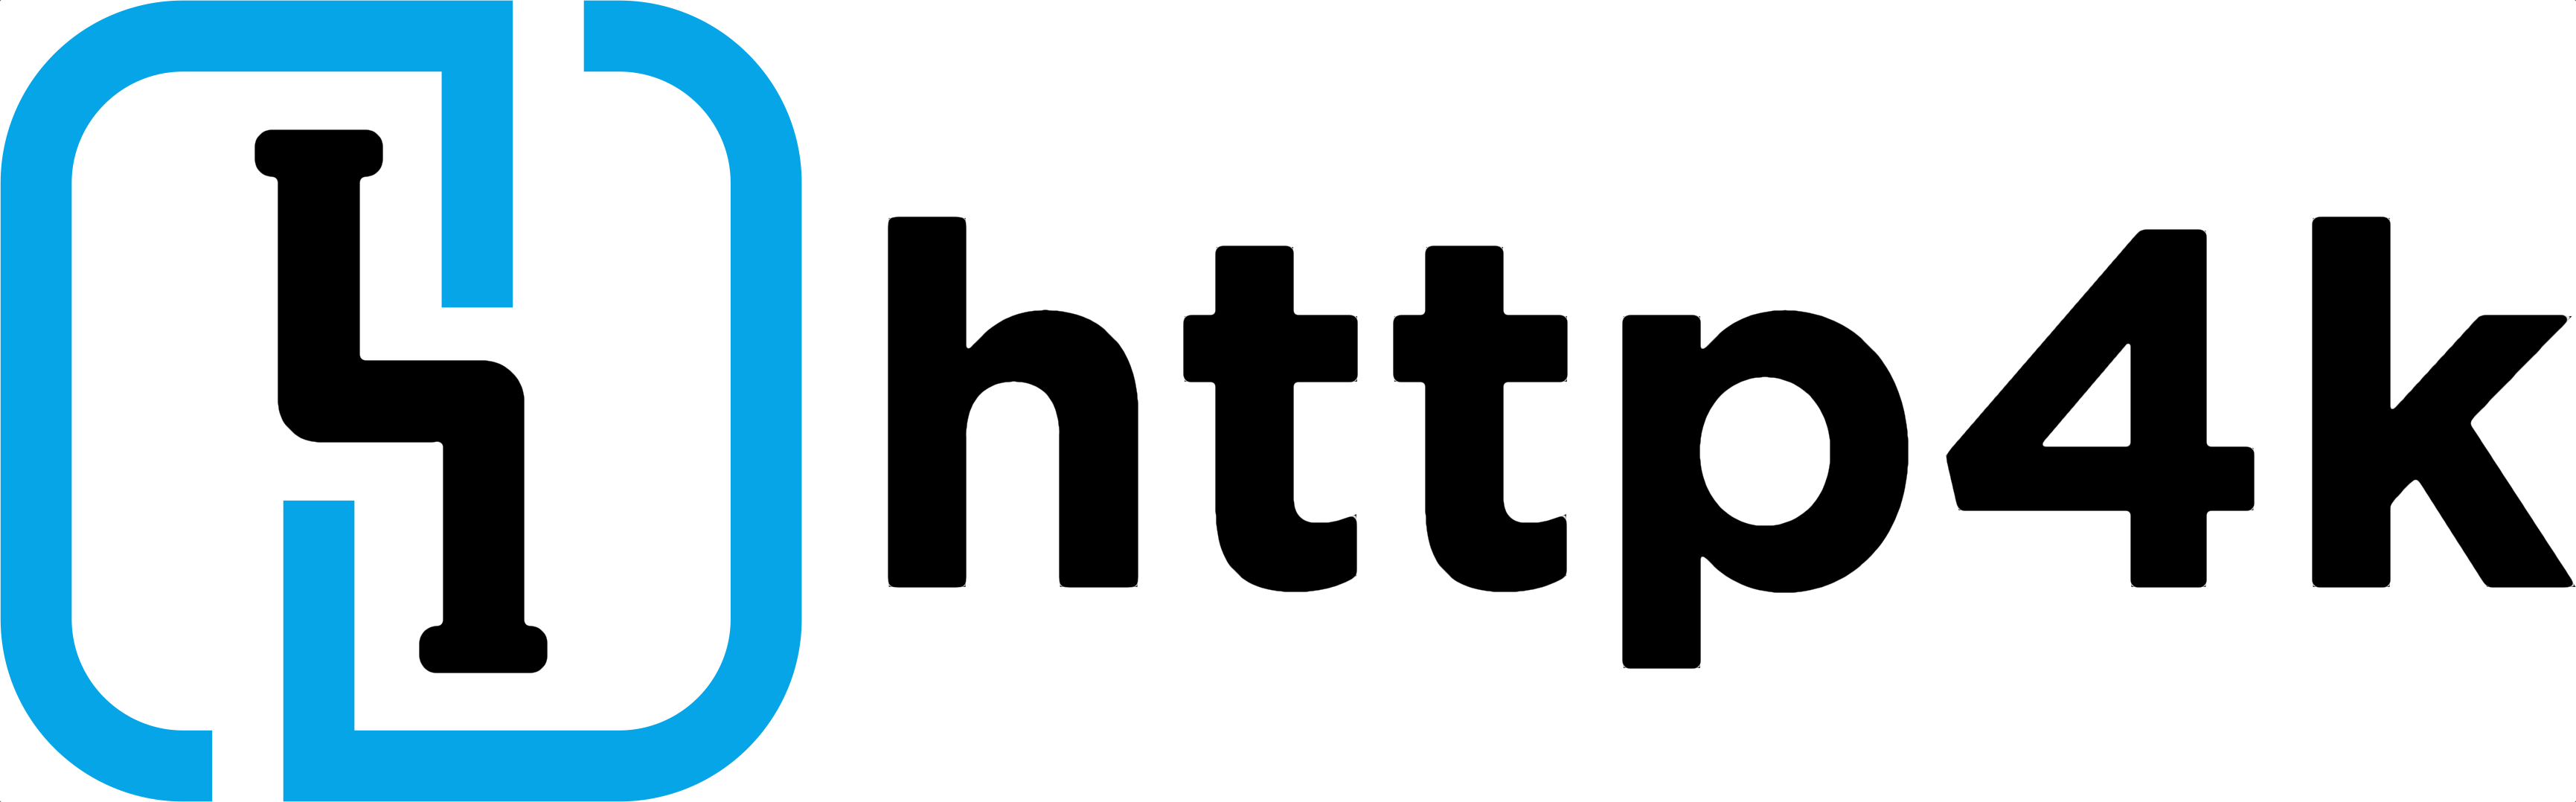 http4k logo